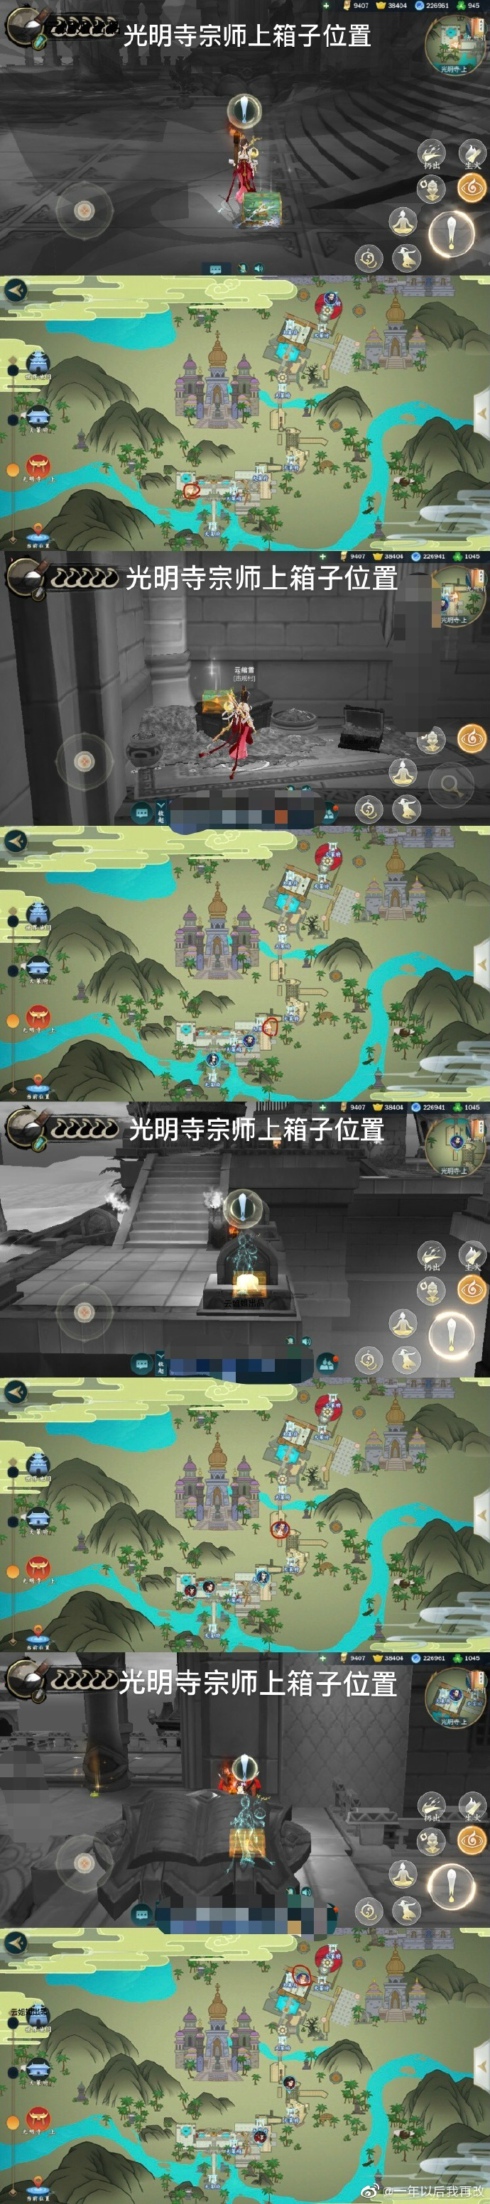 剑网3指尖江湖光明寺地图宝箱在哪 光明寺地图宝箱及风景点位置攻略